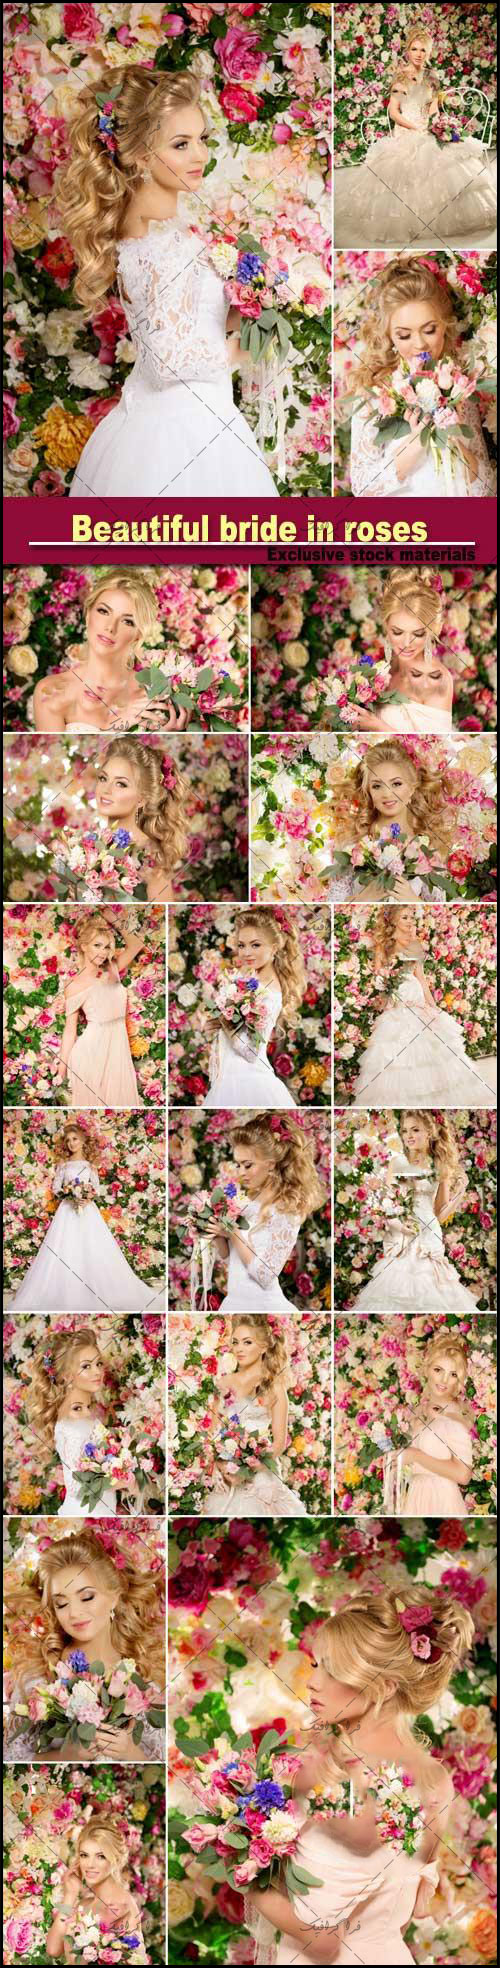 دانلود تصاویر استوک عروس با گل های رز